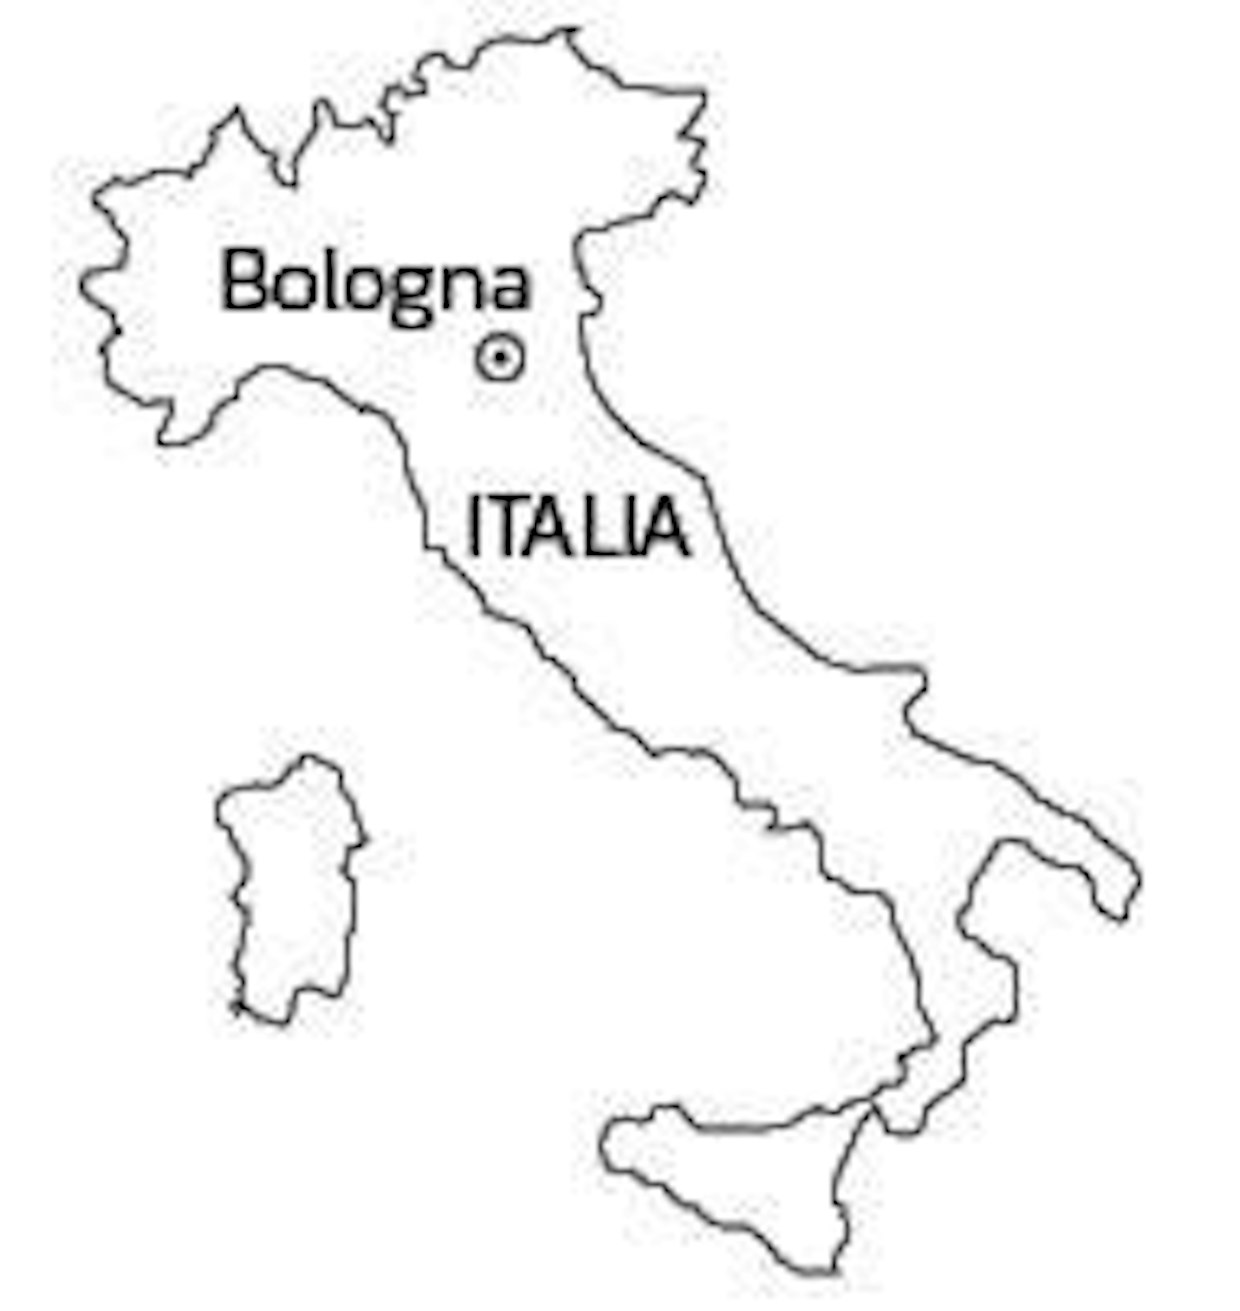 Eima 2012, Bologna, Italia: Maatalousnäyttely italialaisilla mausteilla -  Yritykset ja tapahtumat - Koneviesti